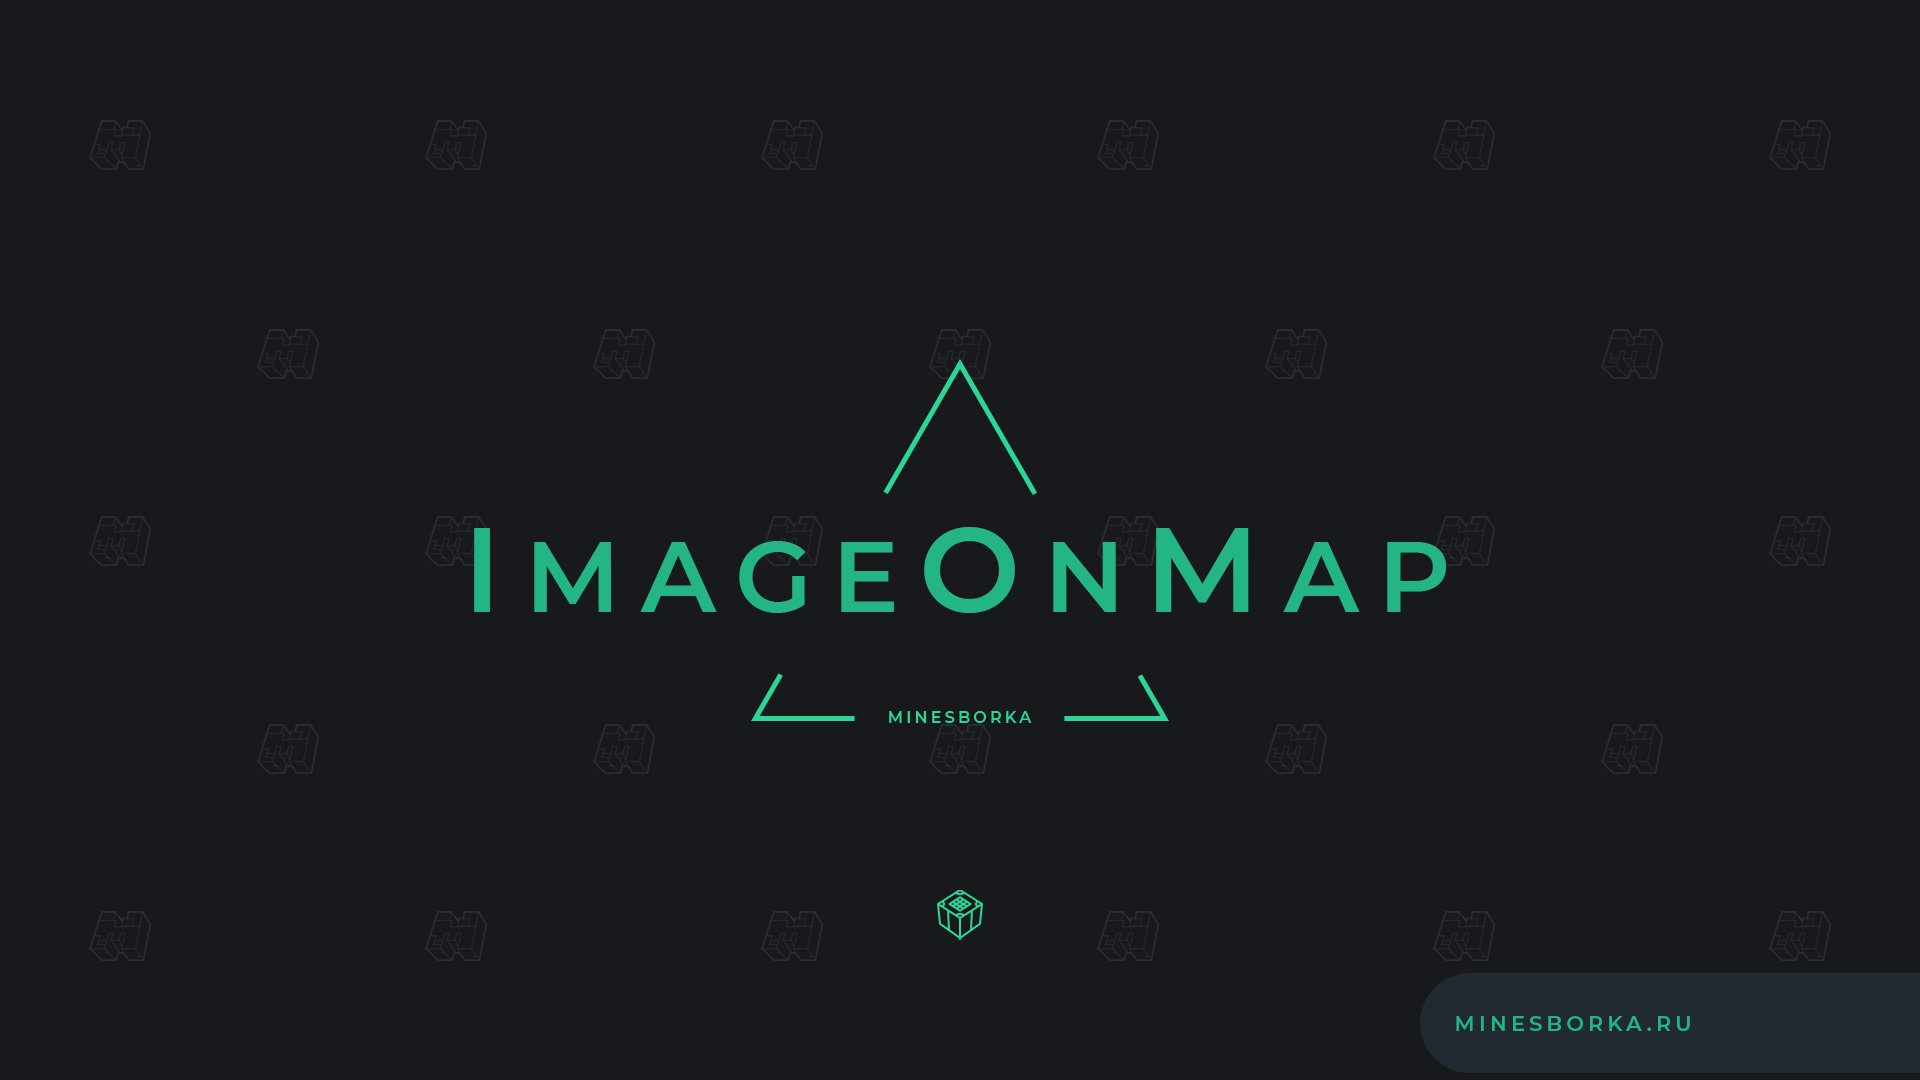 Скачать плагин ImageOnMap | Изображения в Майнкрафте | Картинки на Картах [1.8-1.18]